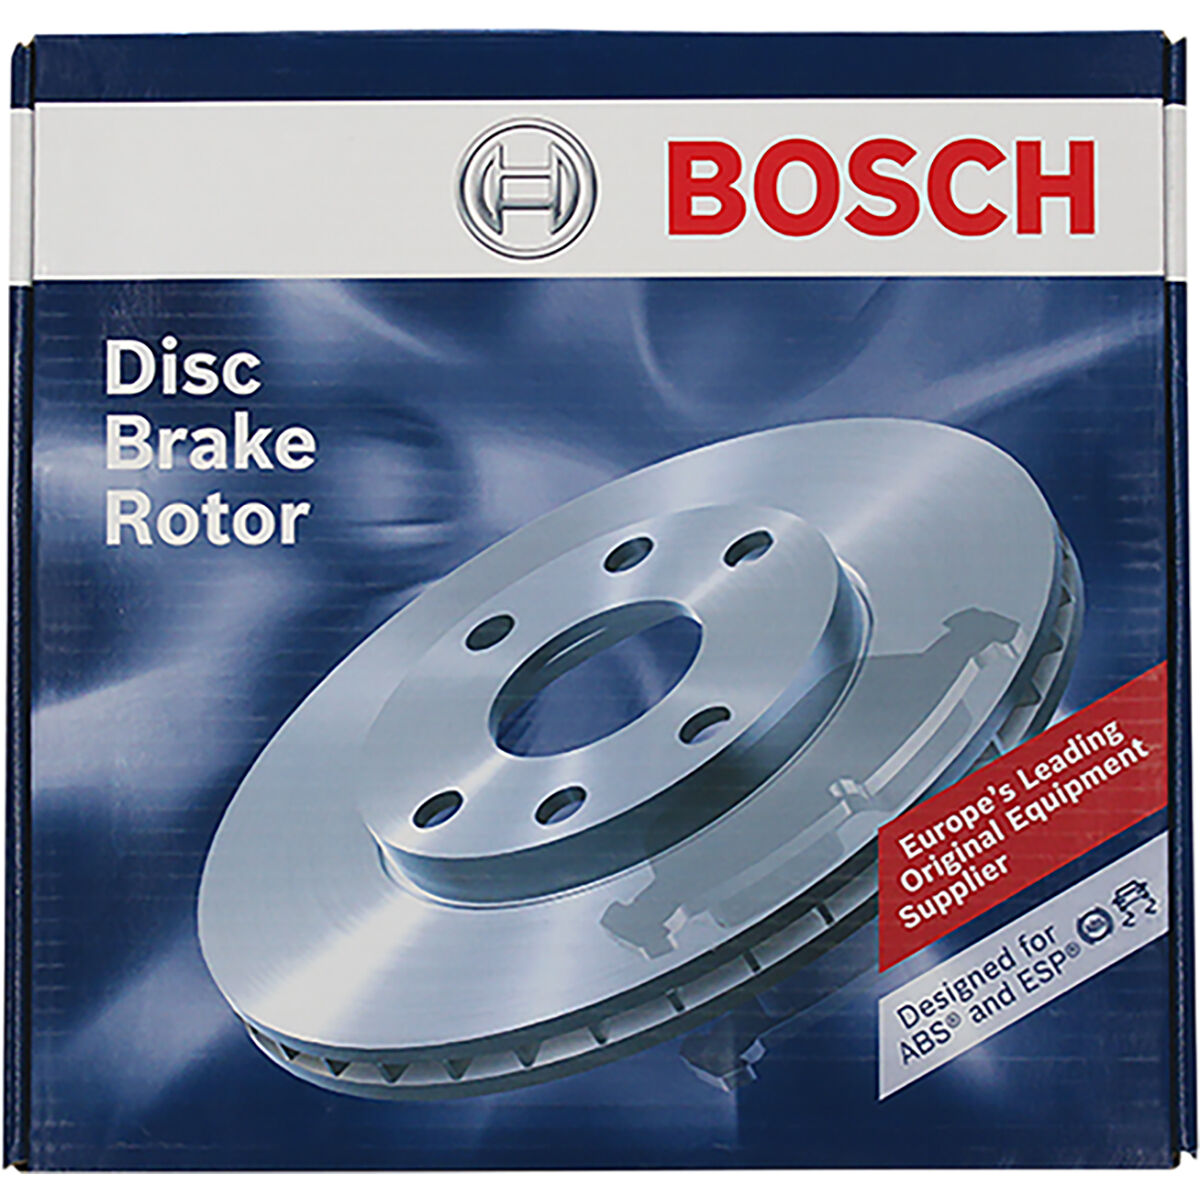 Bosch Disc Brake Rotor - Single, PBR735, , scaau_hi-res